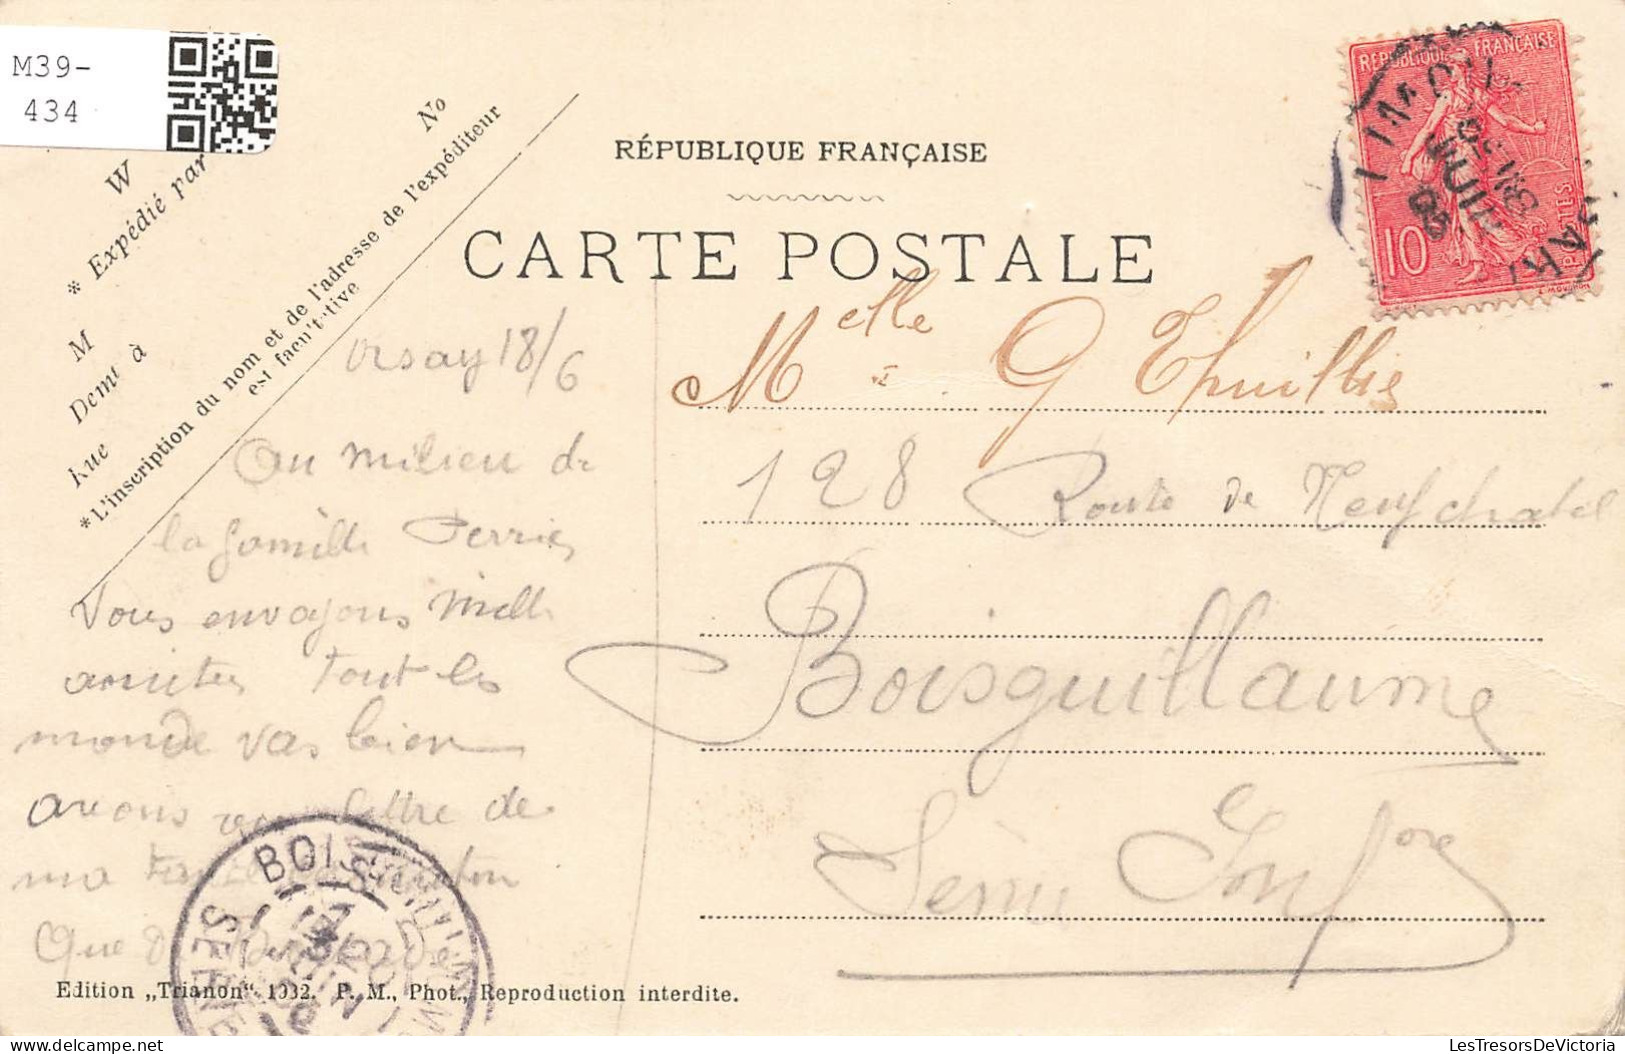 FRANCE - Palaiseau - Les Bords De L'Yvette - Carte Postale Ancienne - Palaiseau